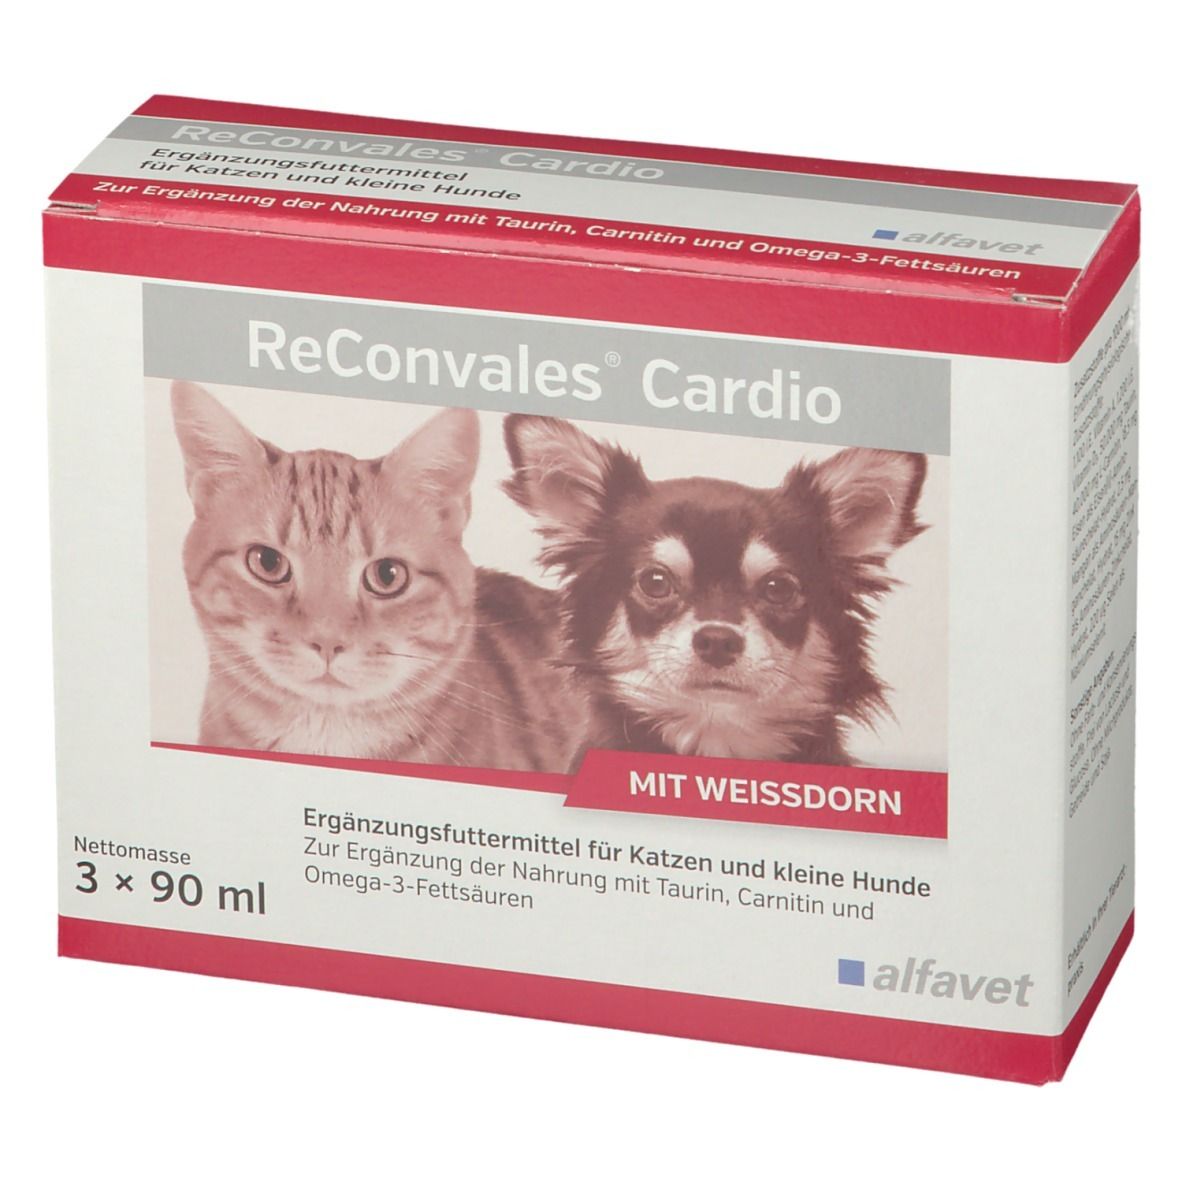 ReConvales® Cardio für Hunde und Katzen